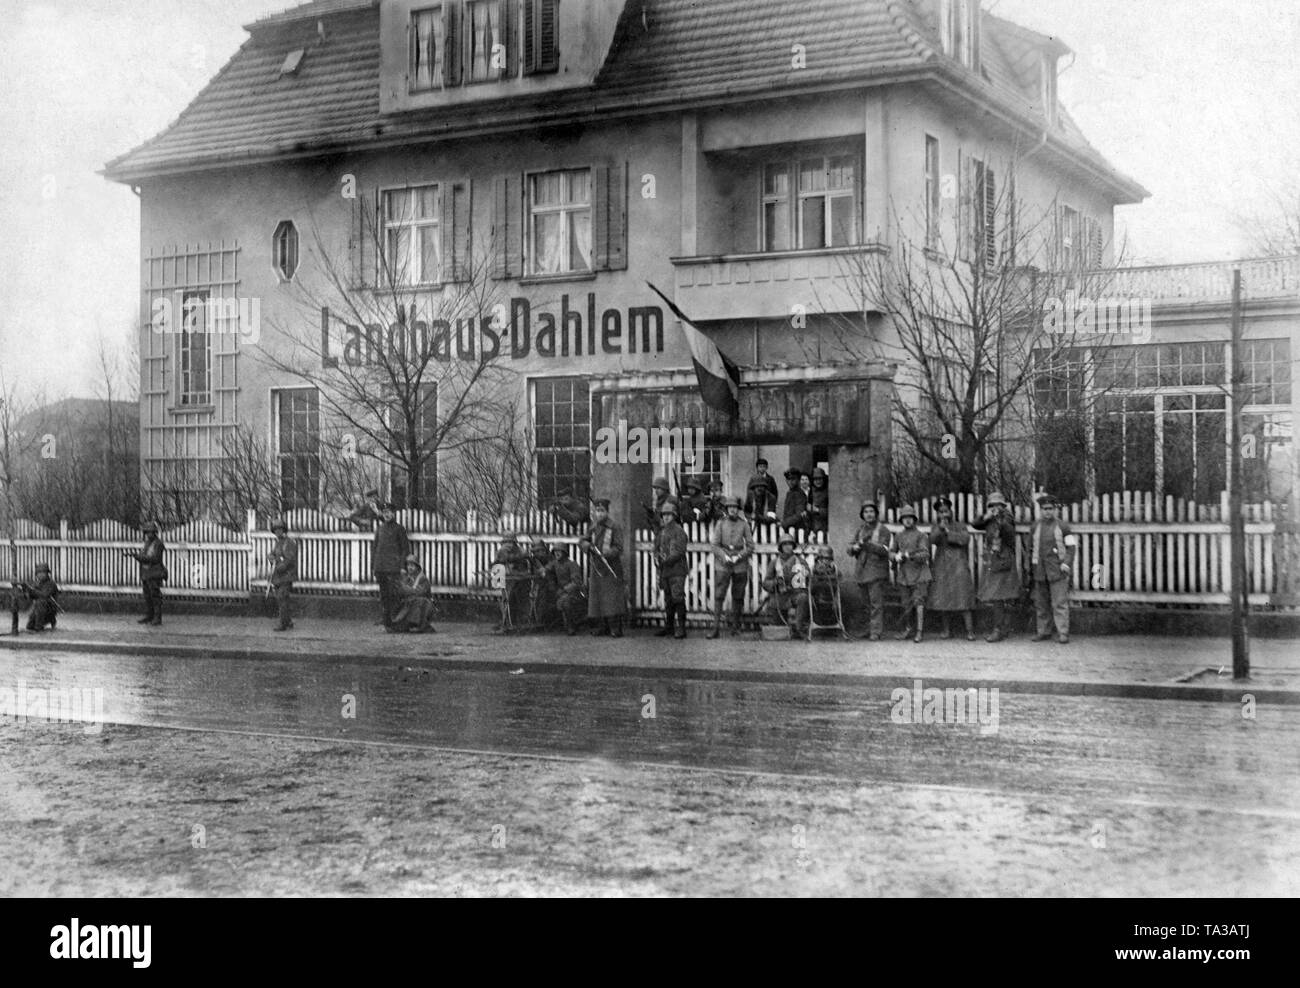 Vue sur le "Landhaus Dahlem' dans le district du même nom à Berlin. Ce fut le siège de l'Volksbeauftragten fuer Heer und Marine (représentant du peuple pour l'armée et la Marine) Gustav Noske lors de l'insurrection de janvier et le Maerzkaempfe Berlin (mars combat) au printemps de 1919. En face de lui les membres de l'aide, qui étaient responsables de la répression de l'émeute. Le noir-blanc-rouge d'un drapeau est hissé. Cette photo a été prise probablement durant le soulèvement de janvier. Banque D'Images